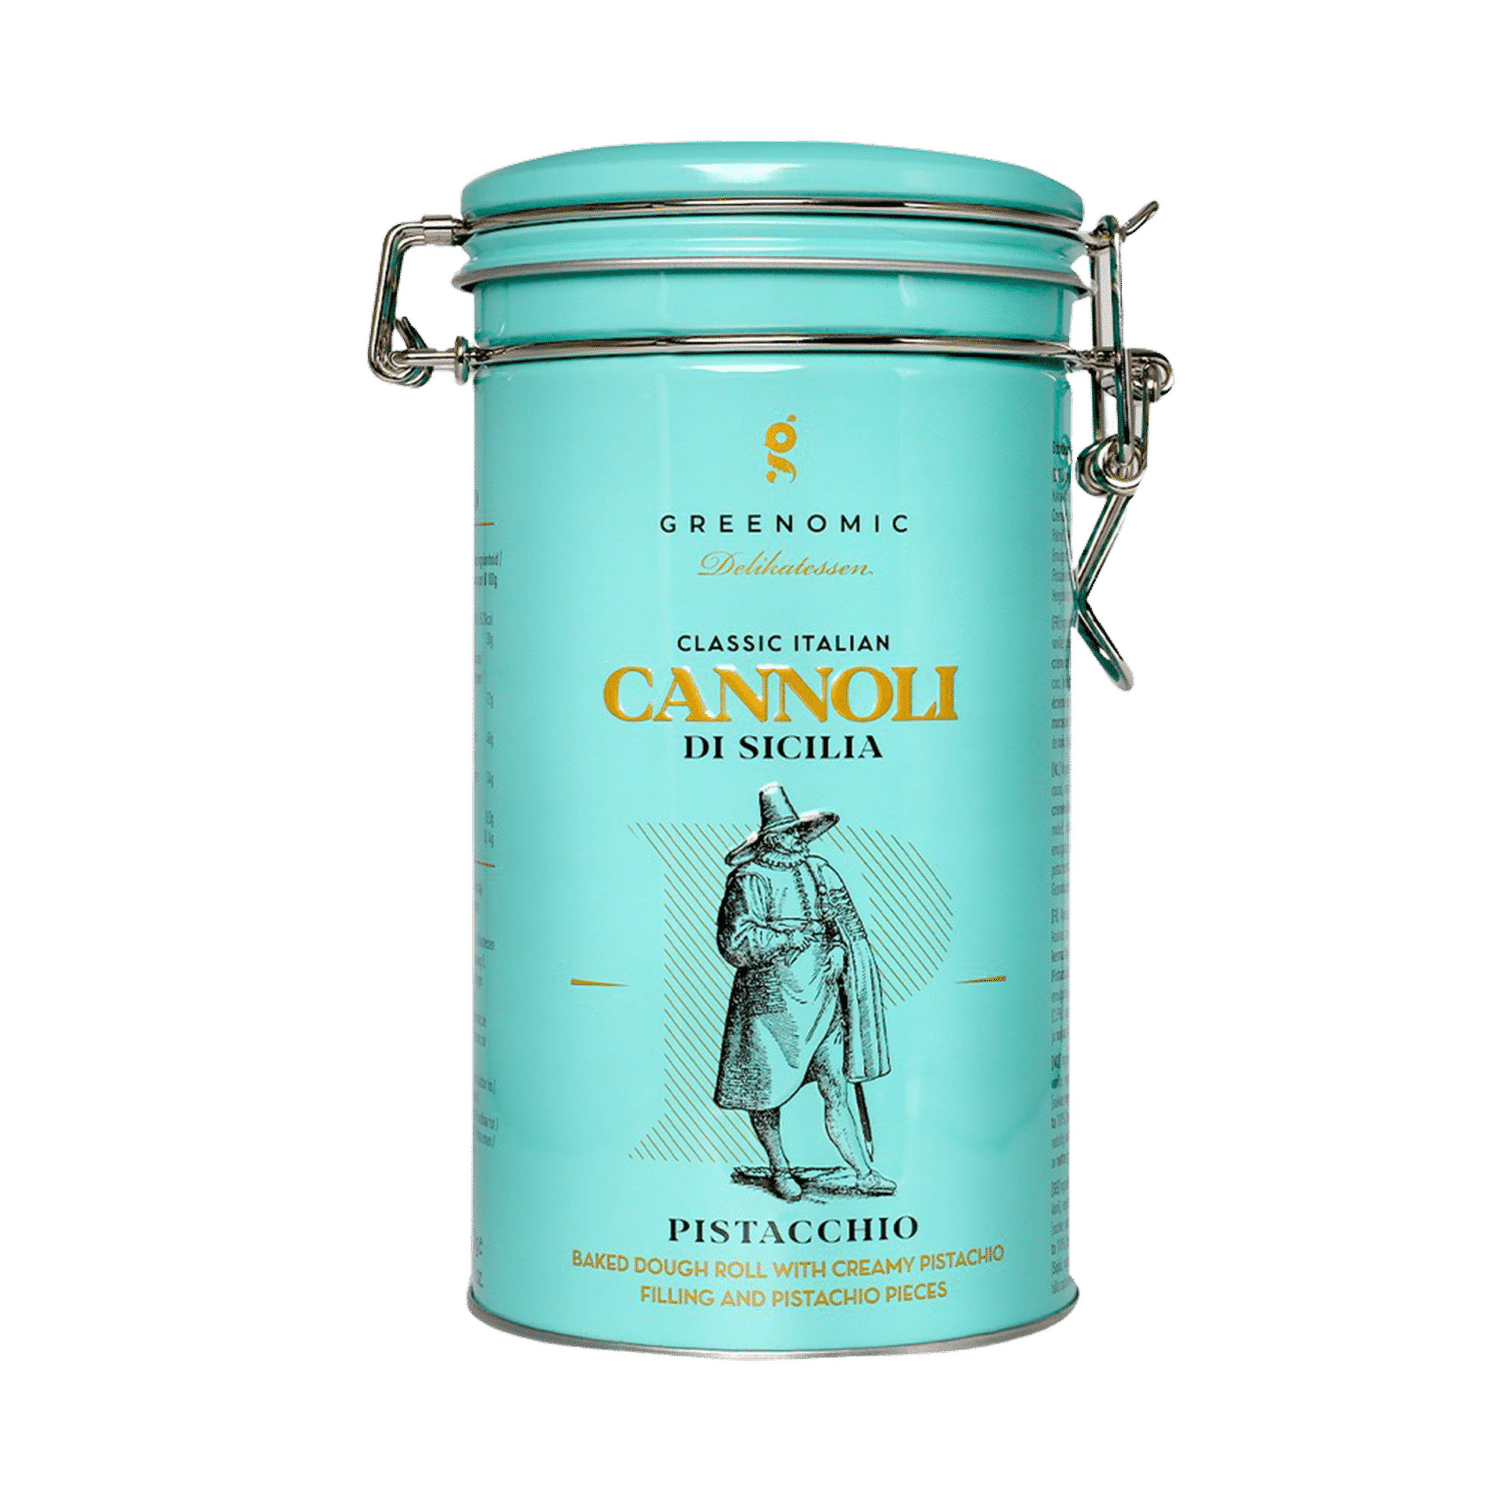 GREENOMIC - Cannoli mit zarter Pistacchio-Cremefüllung – Dose - Cannoli di Sicilia 
PISTACCHIO